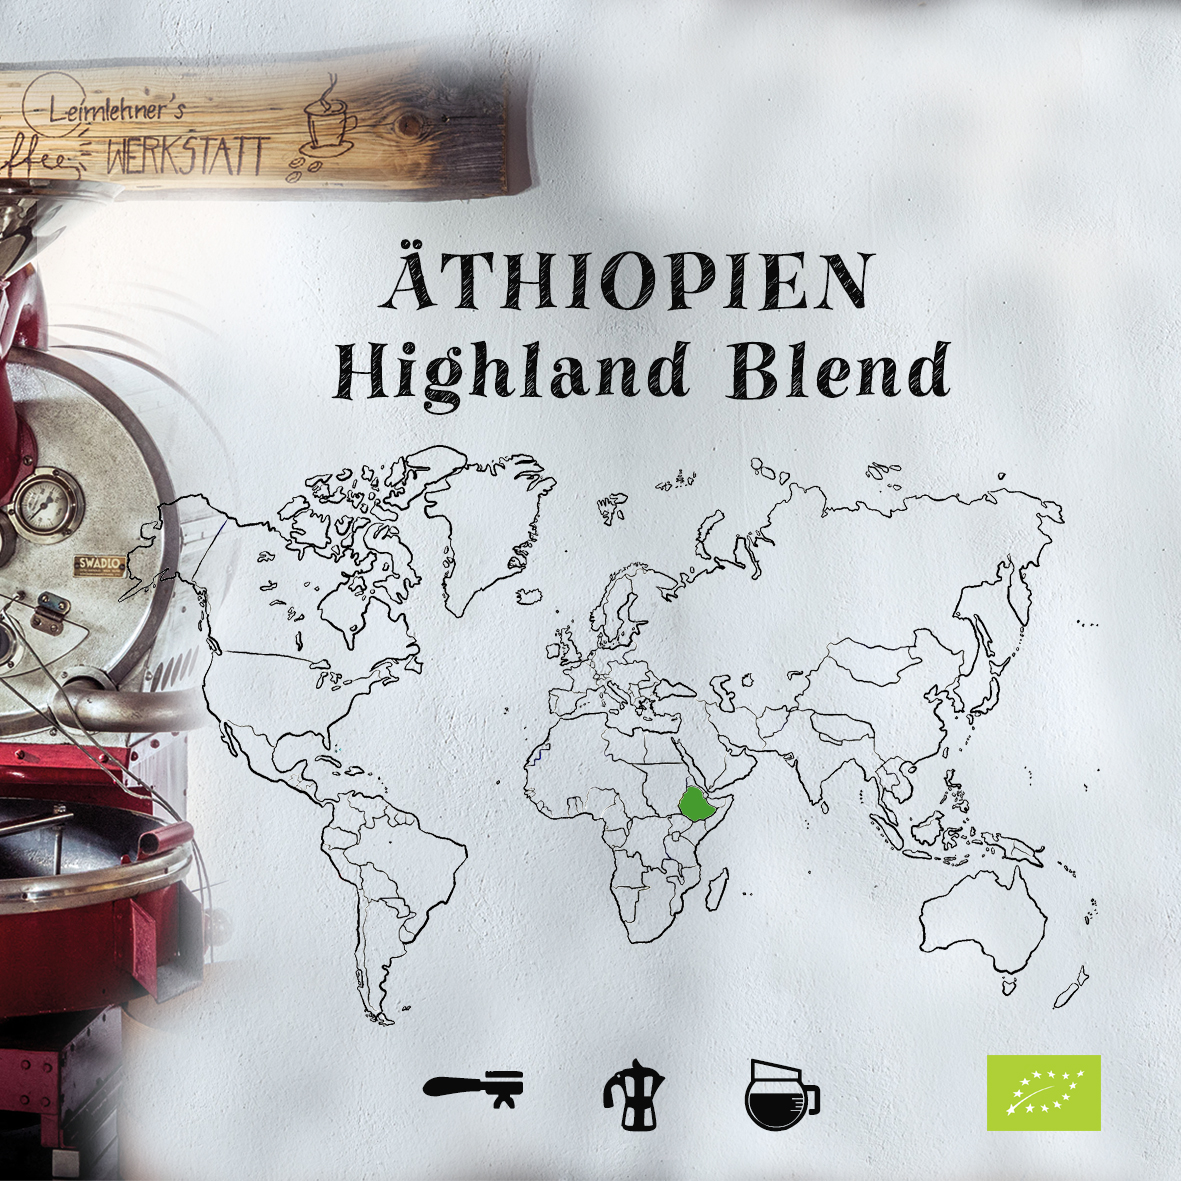 Äthiopien highland blend1